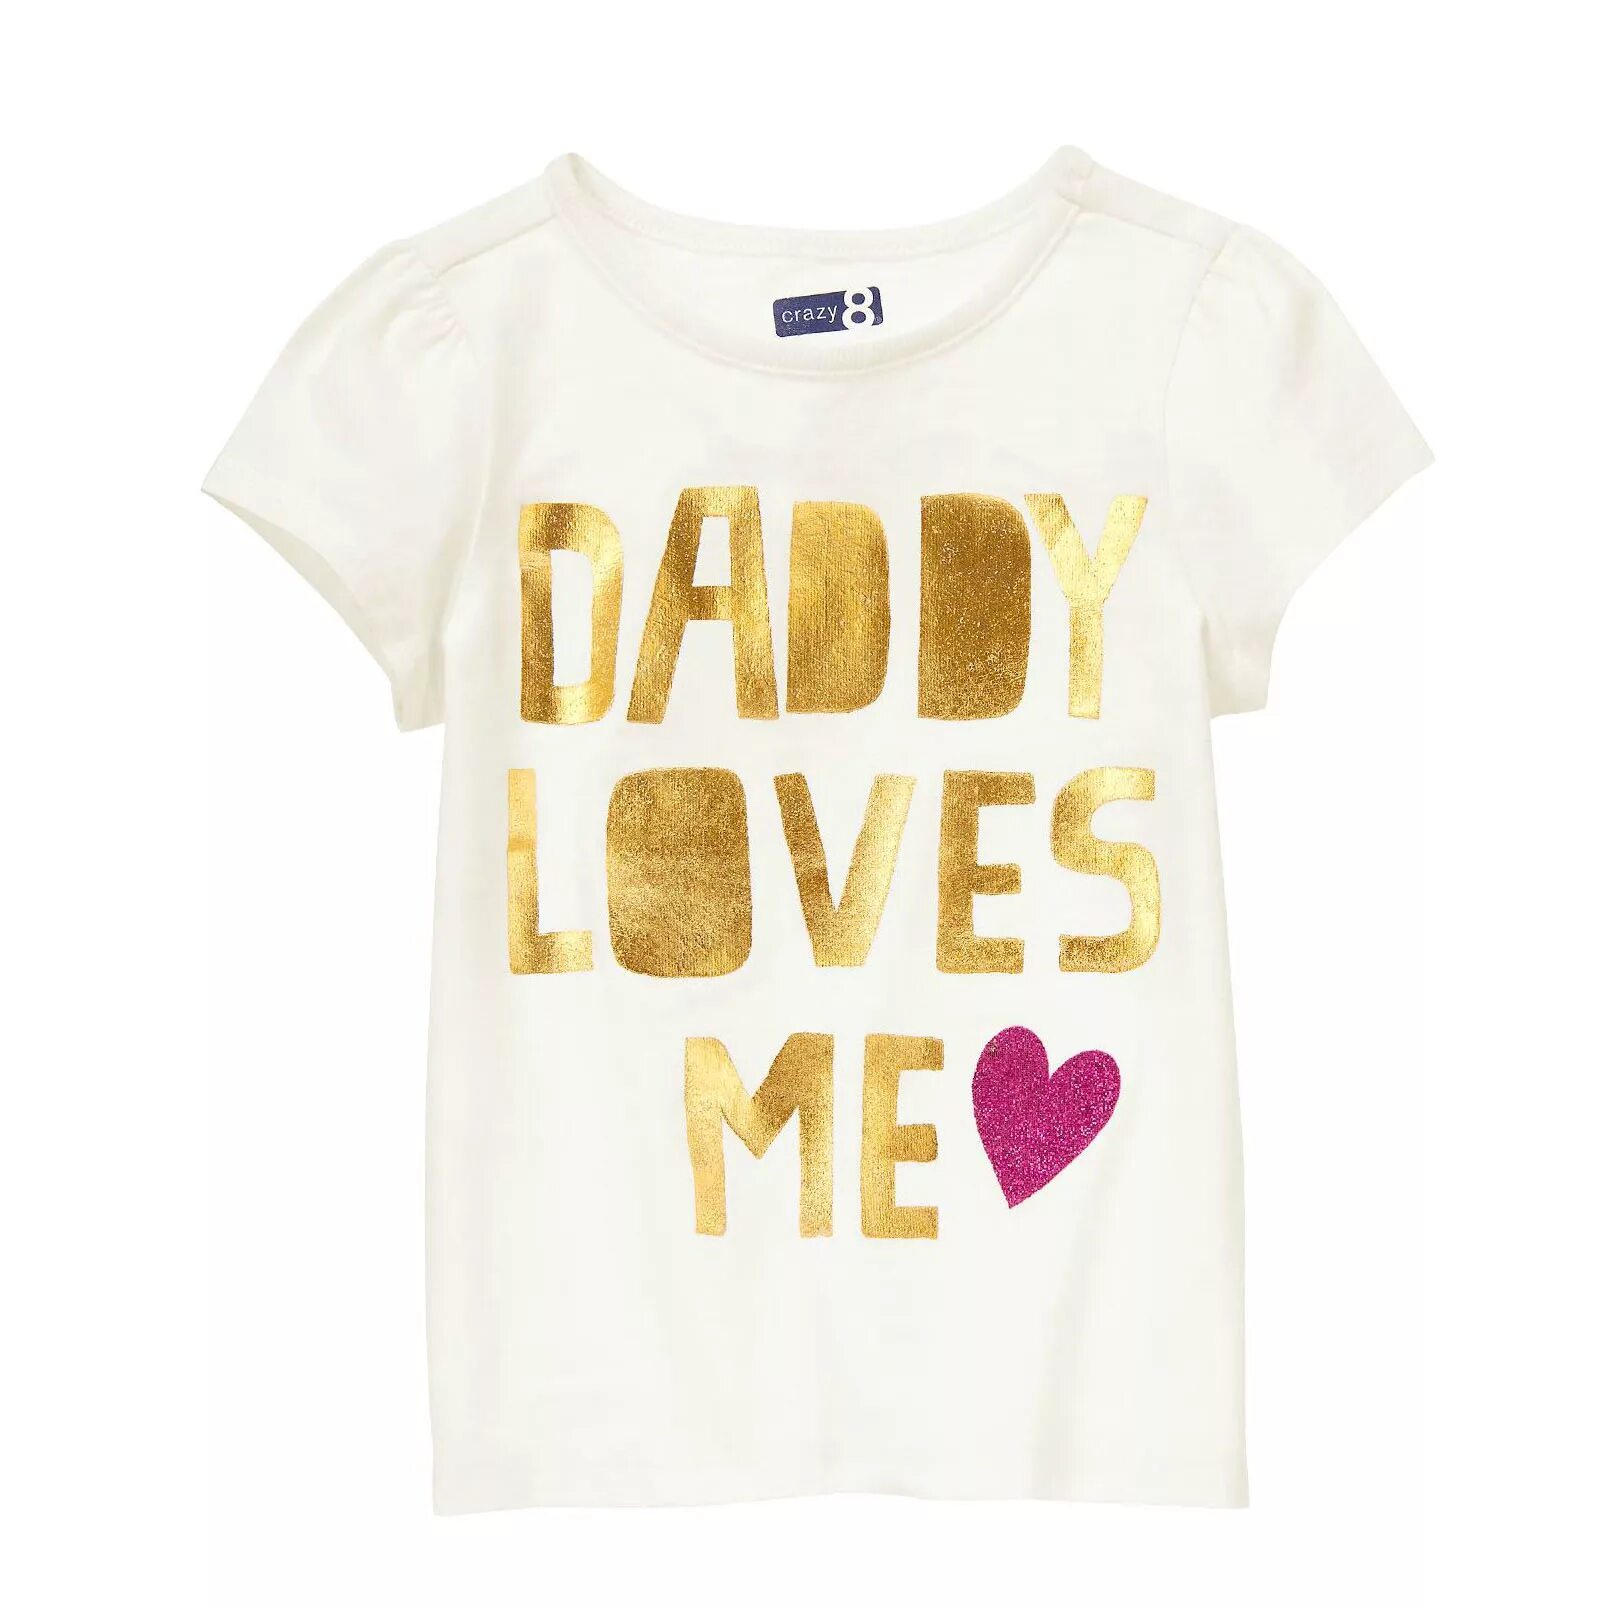 Футболки crazy8. Crazy8 футболки для девочек. Футболки Daddy's Love. Футболка i Love dad.